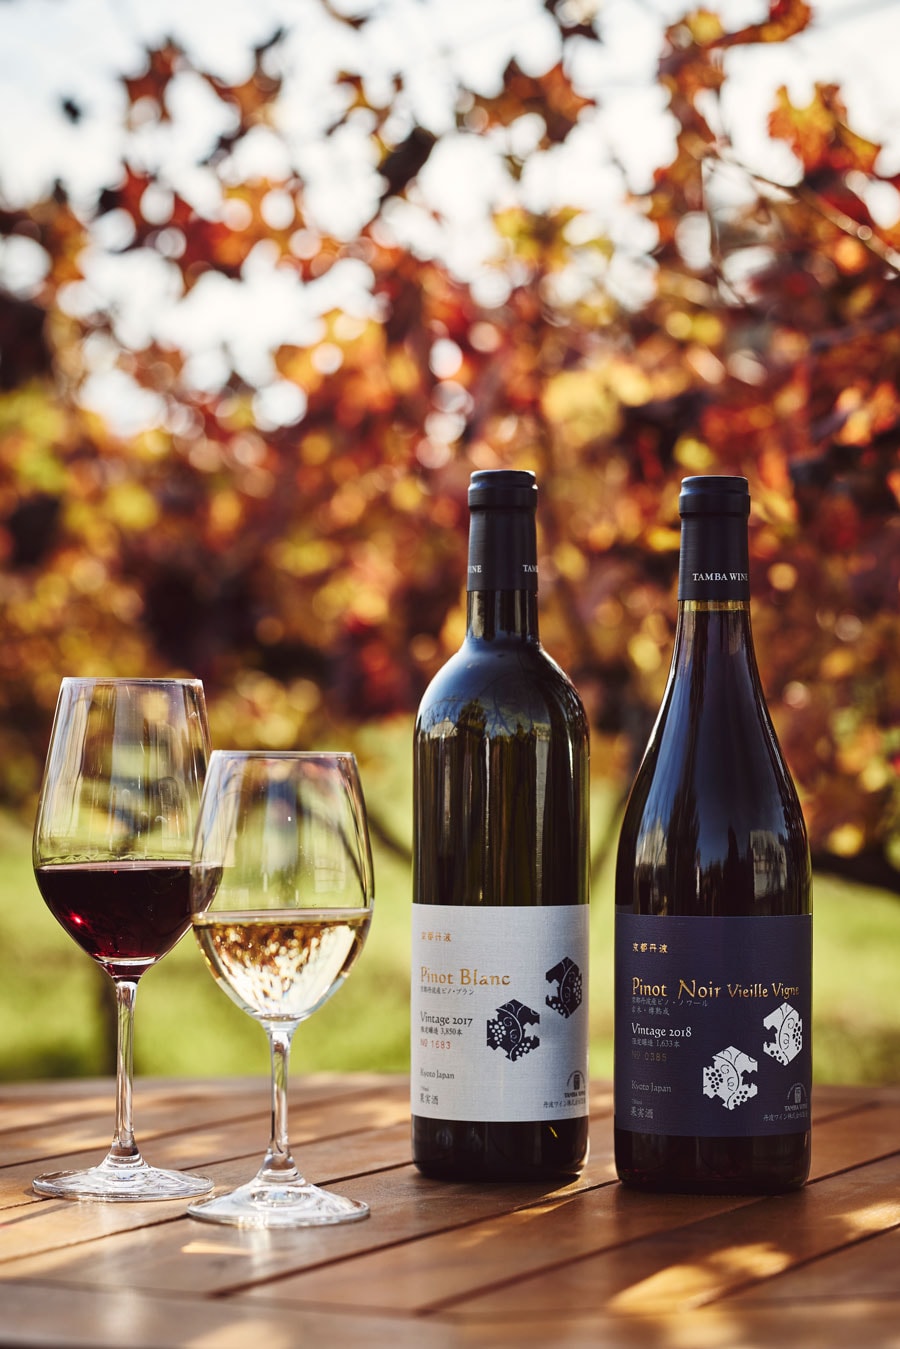 1979年から土地に根差したワインづくりを続けている丹波ワイン。